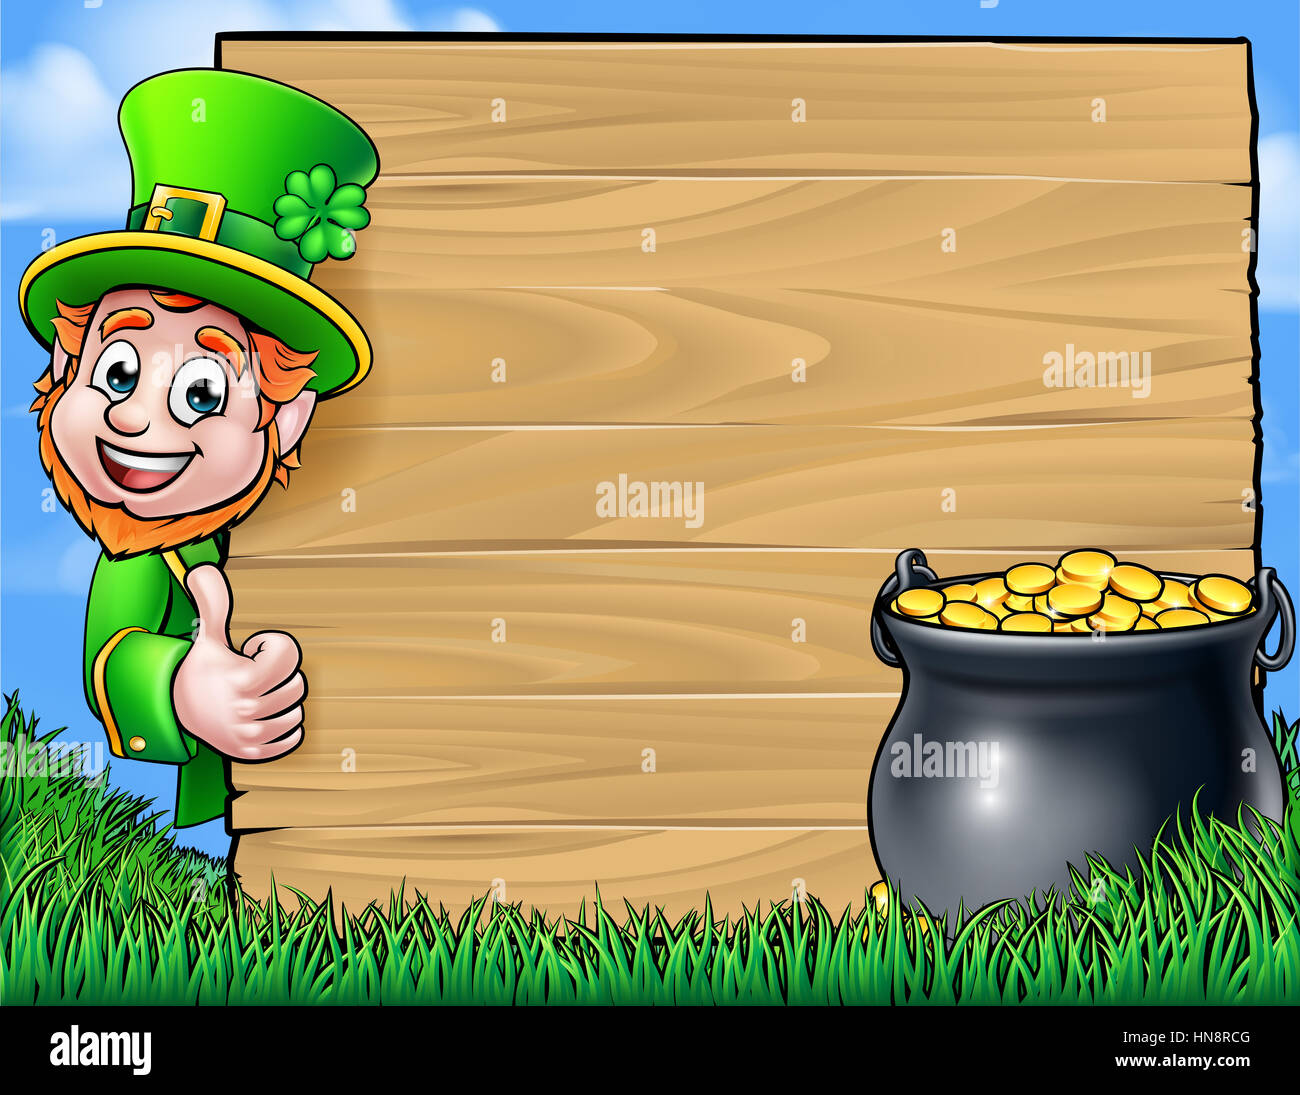 Un dessin animé caractère farfadet leaning autour d'un panneau en bois et giving Thumbs up avec un pot d'or. St Patricks Day background Banque D'Images